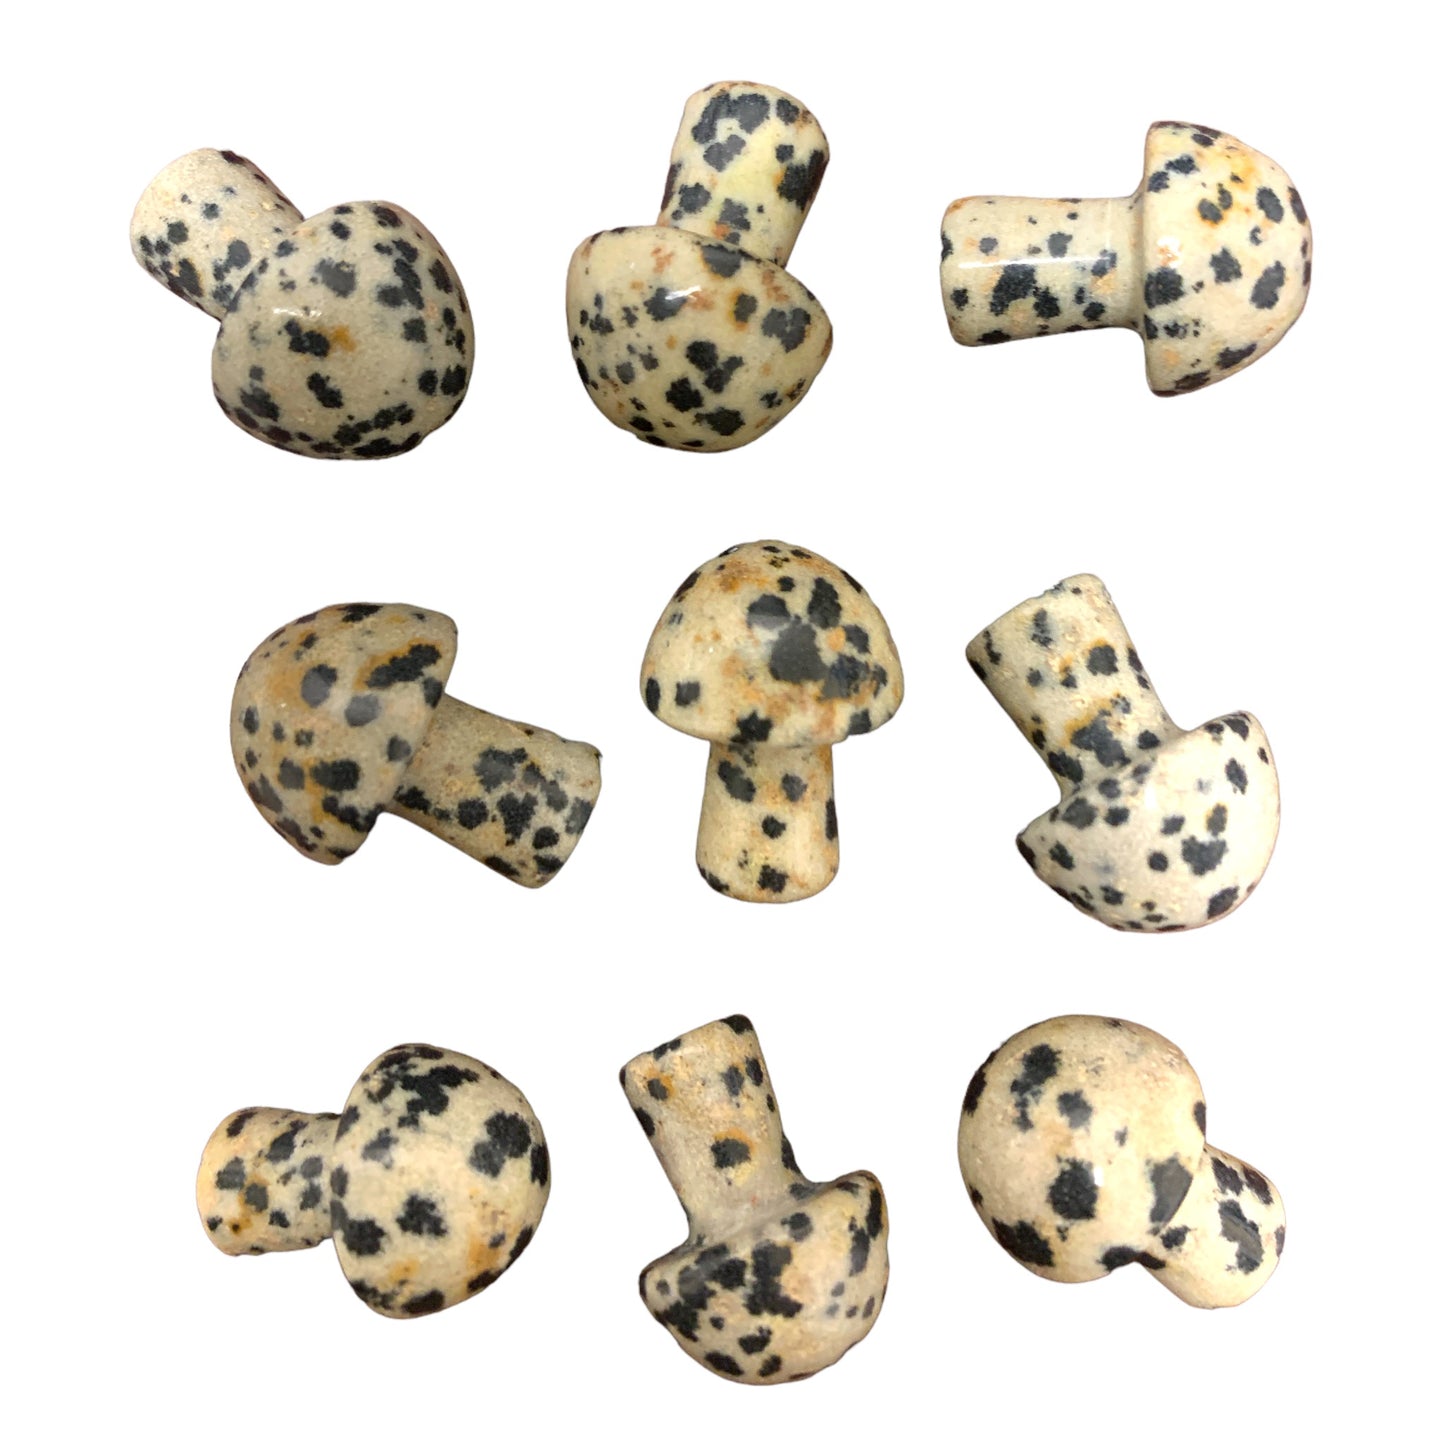 Dalmatian Jasper Mini Mushrooms - 19-20 mm - Price Each - China - NEW922